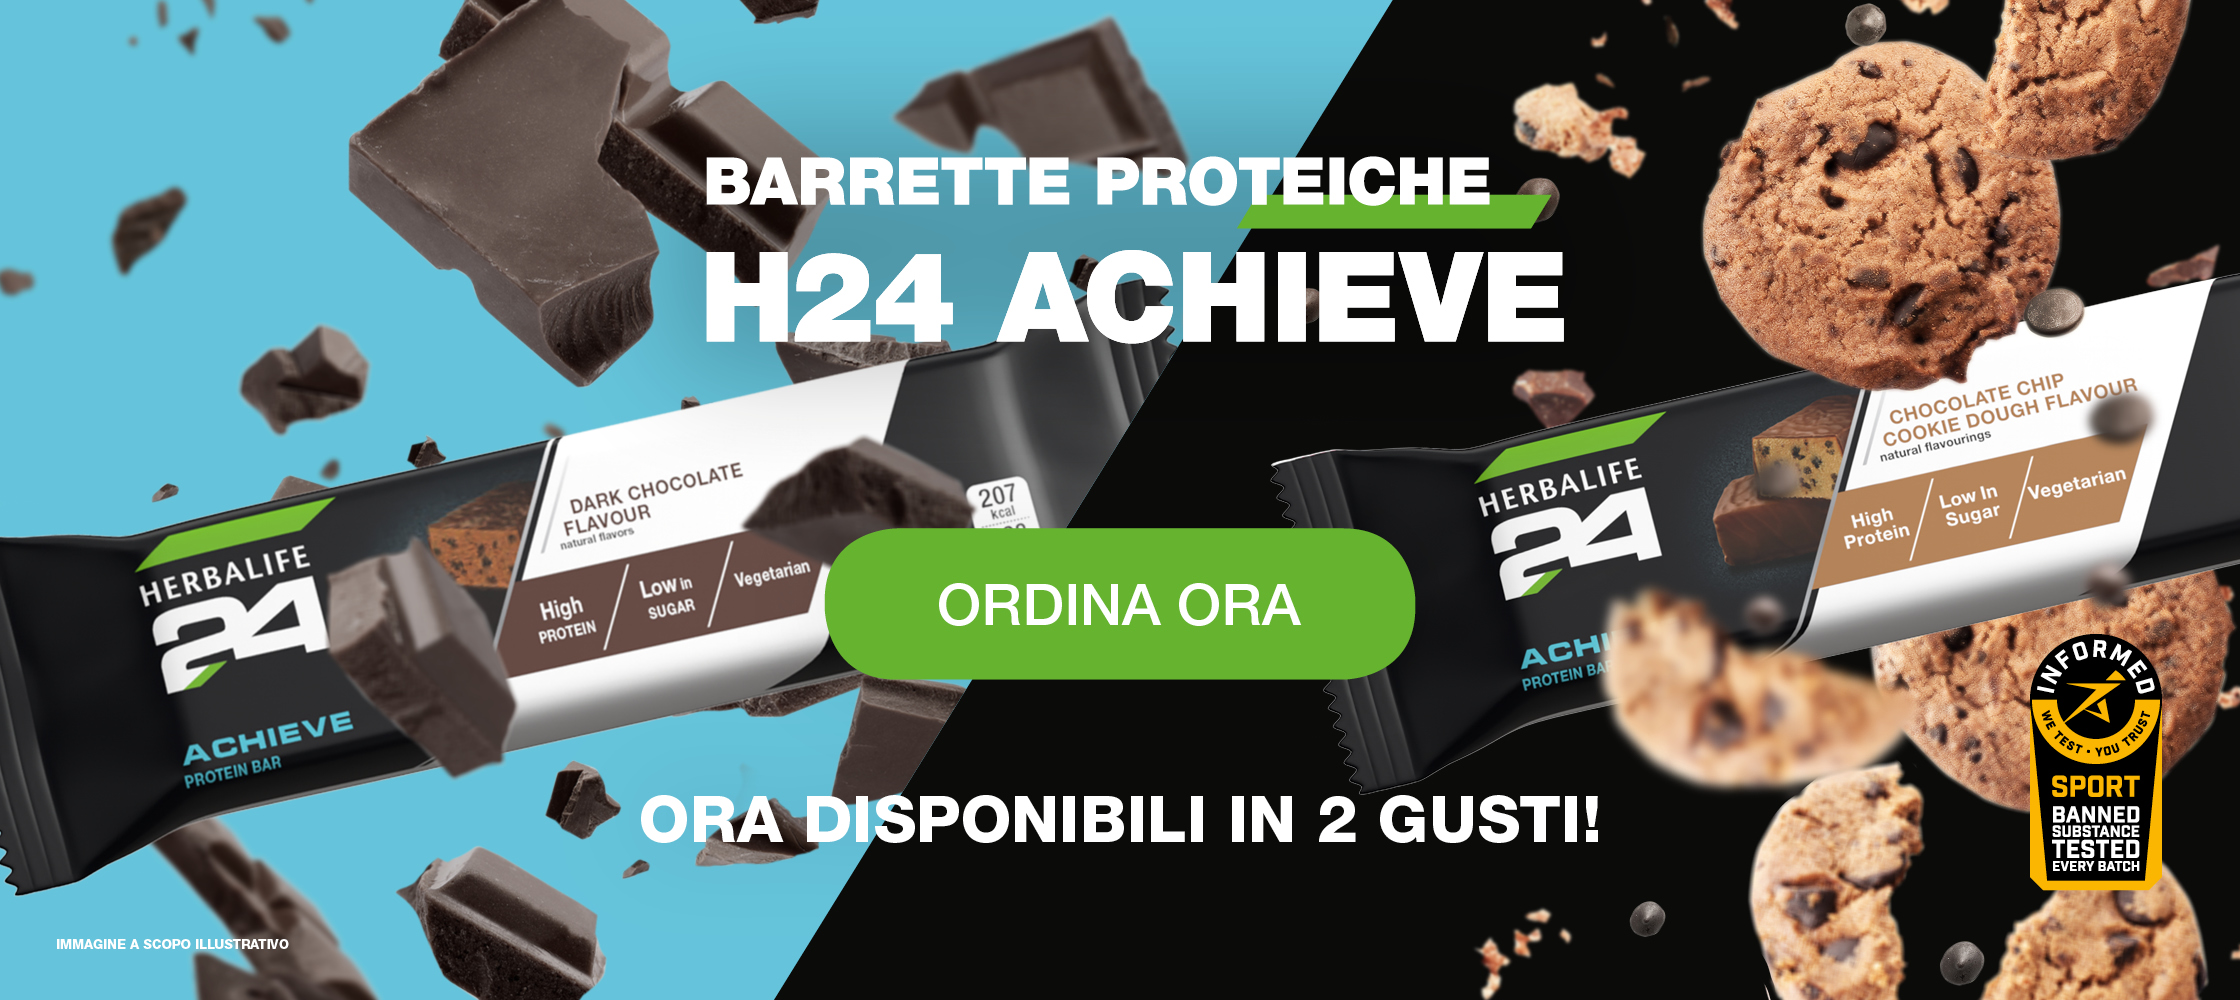 Alt Txt Barrette Proteiche Herbalife24® Achieve Cioccolato e biscotto product shot